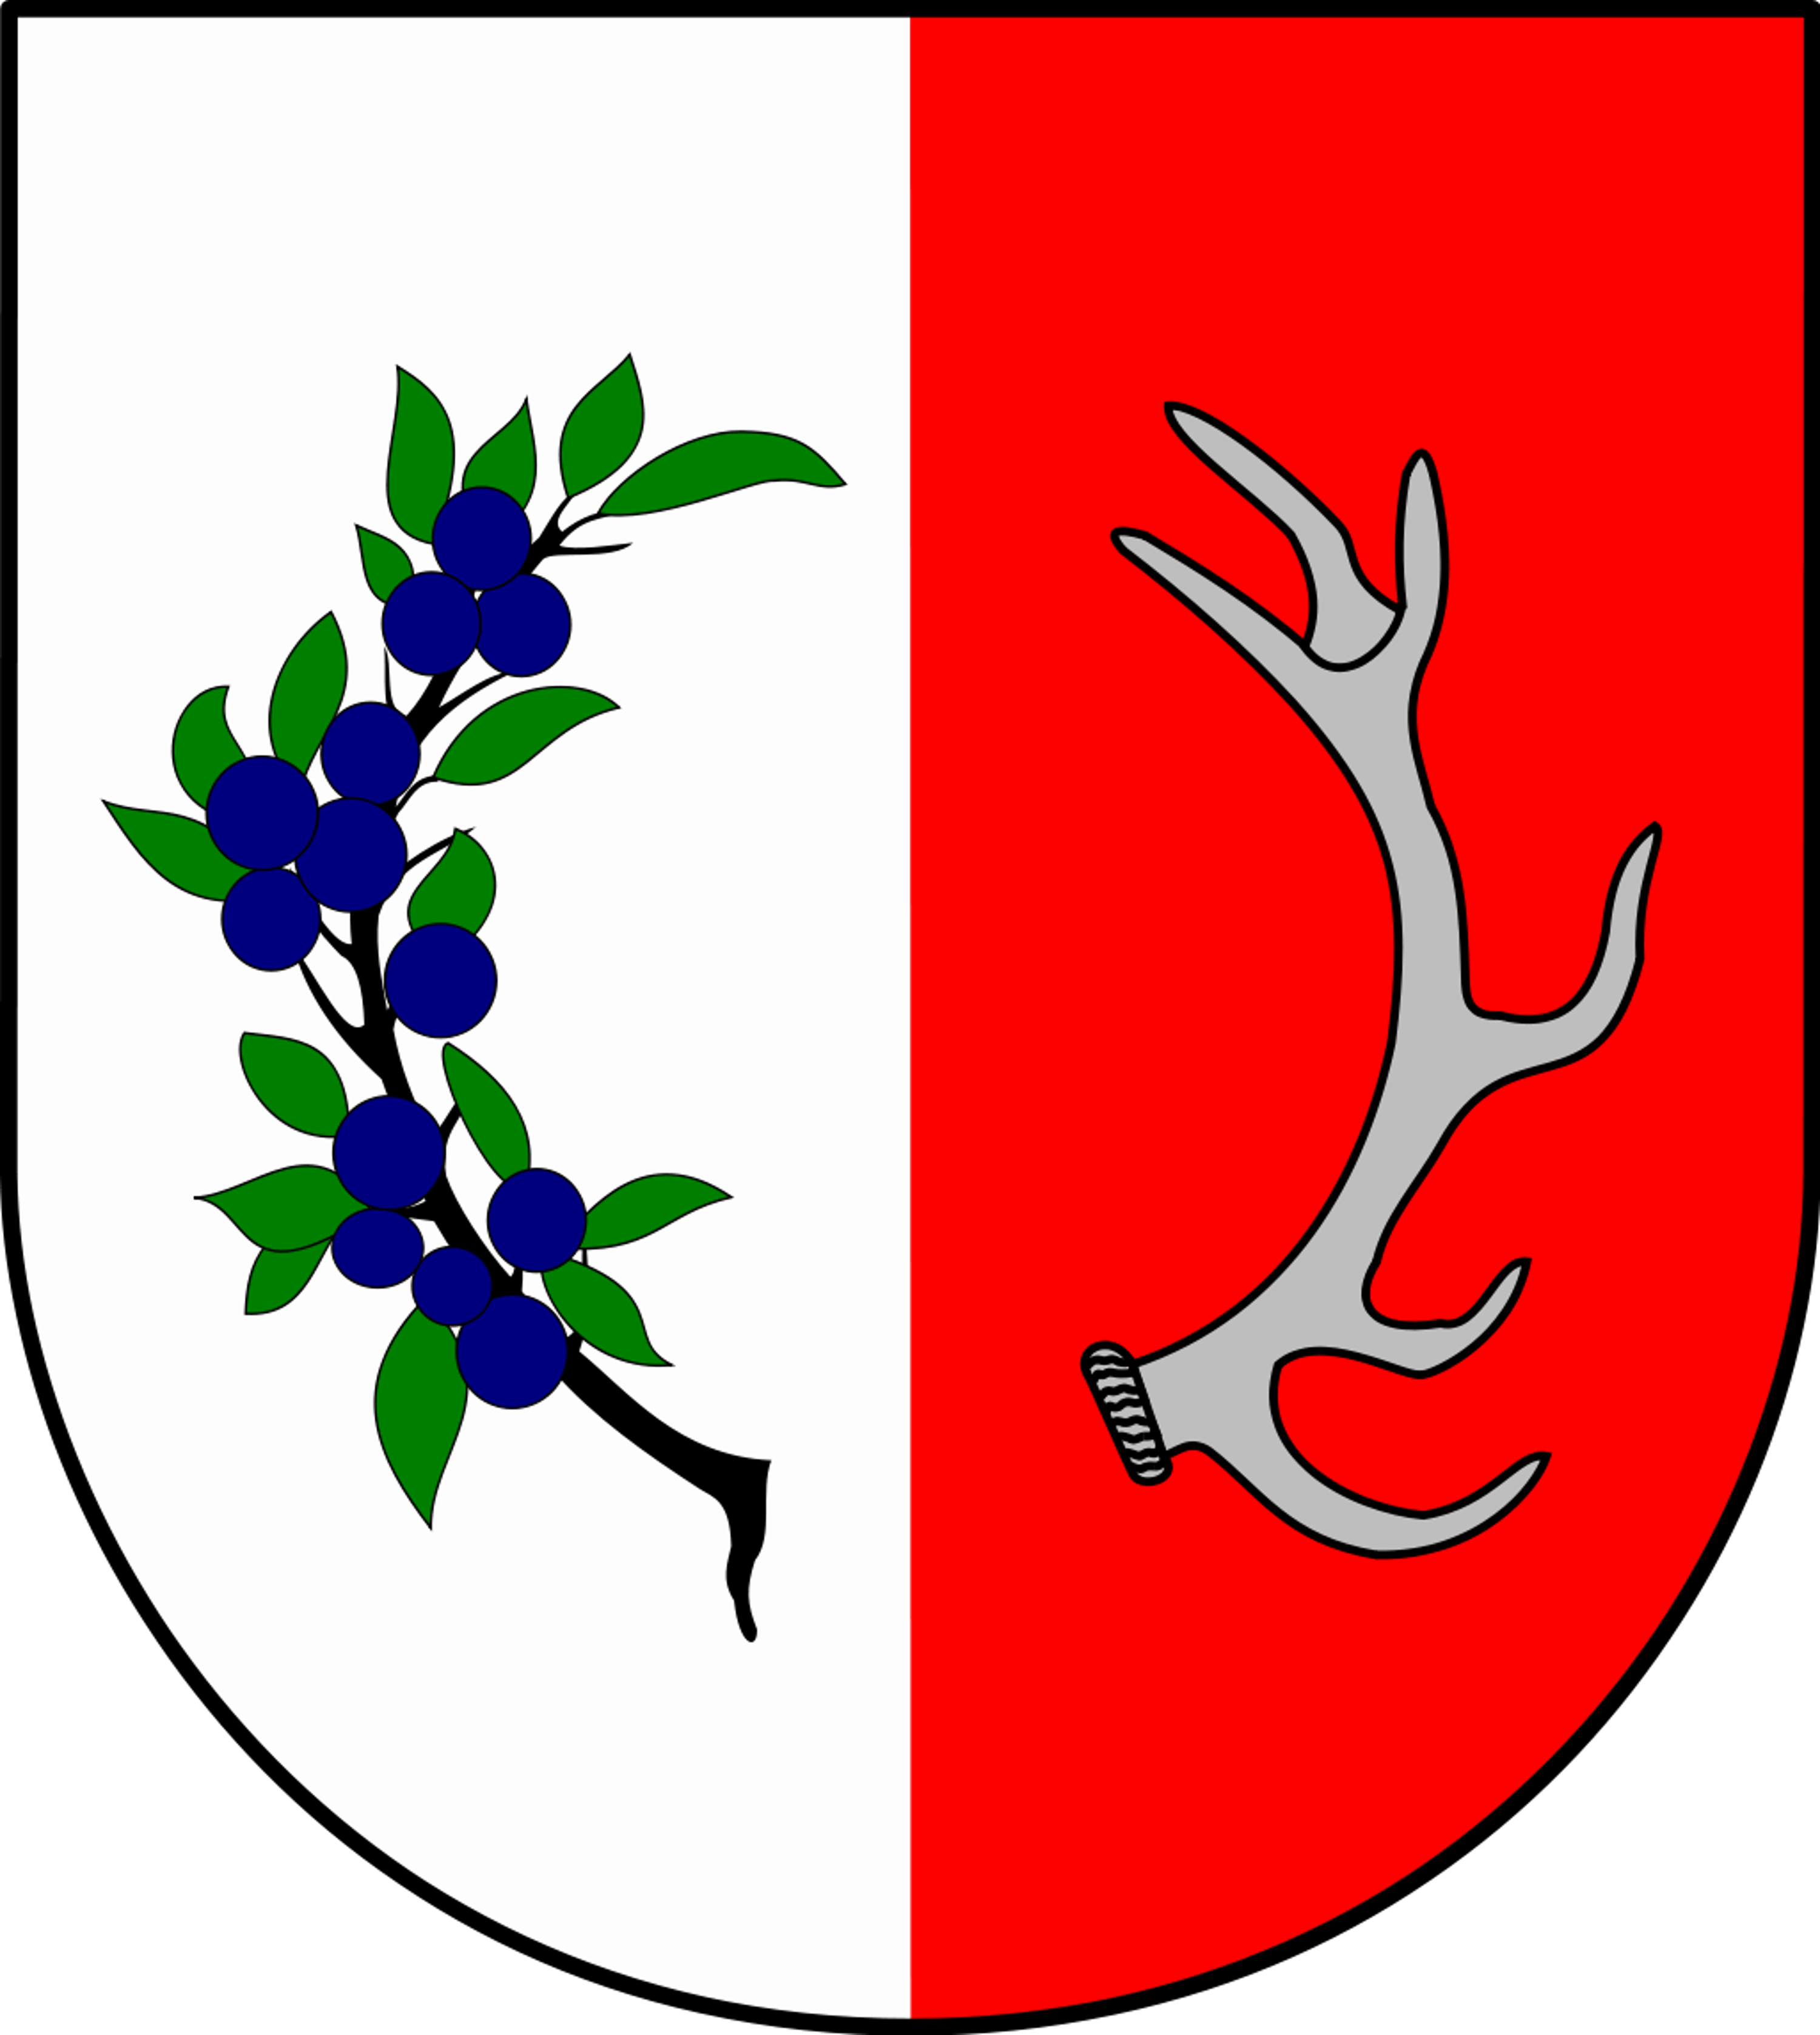 herb gminy Śliwice, kolory: biały, czerwony, zielony, szary, granatowy